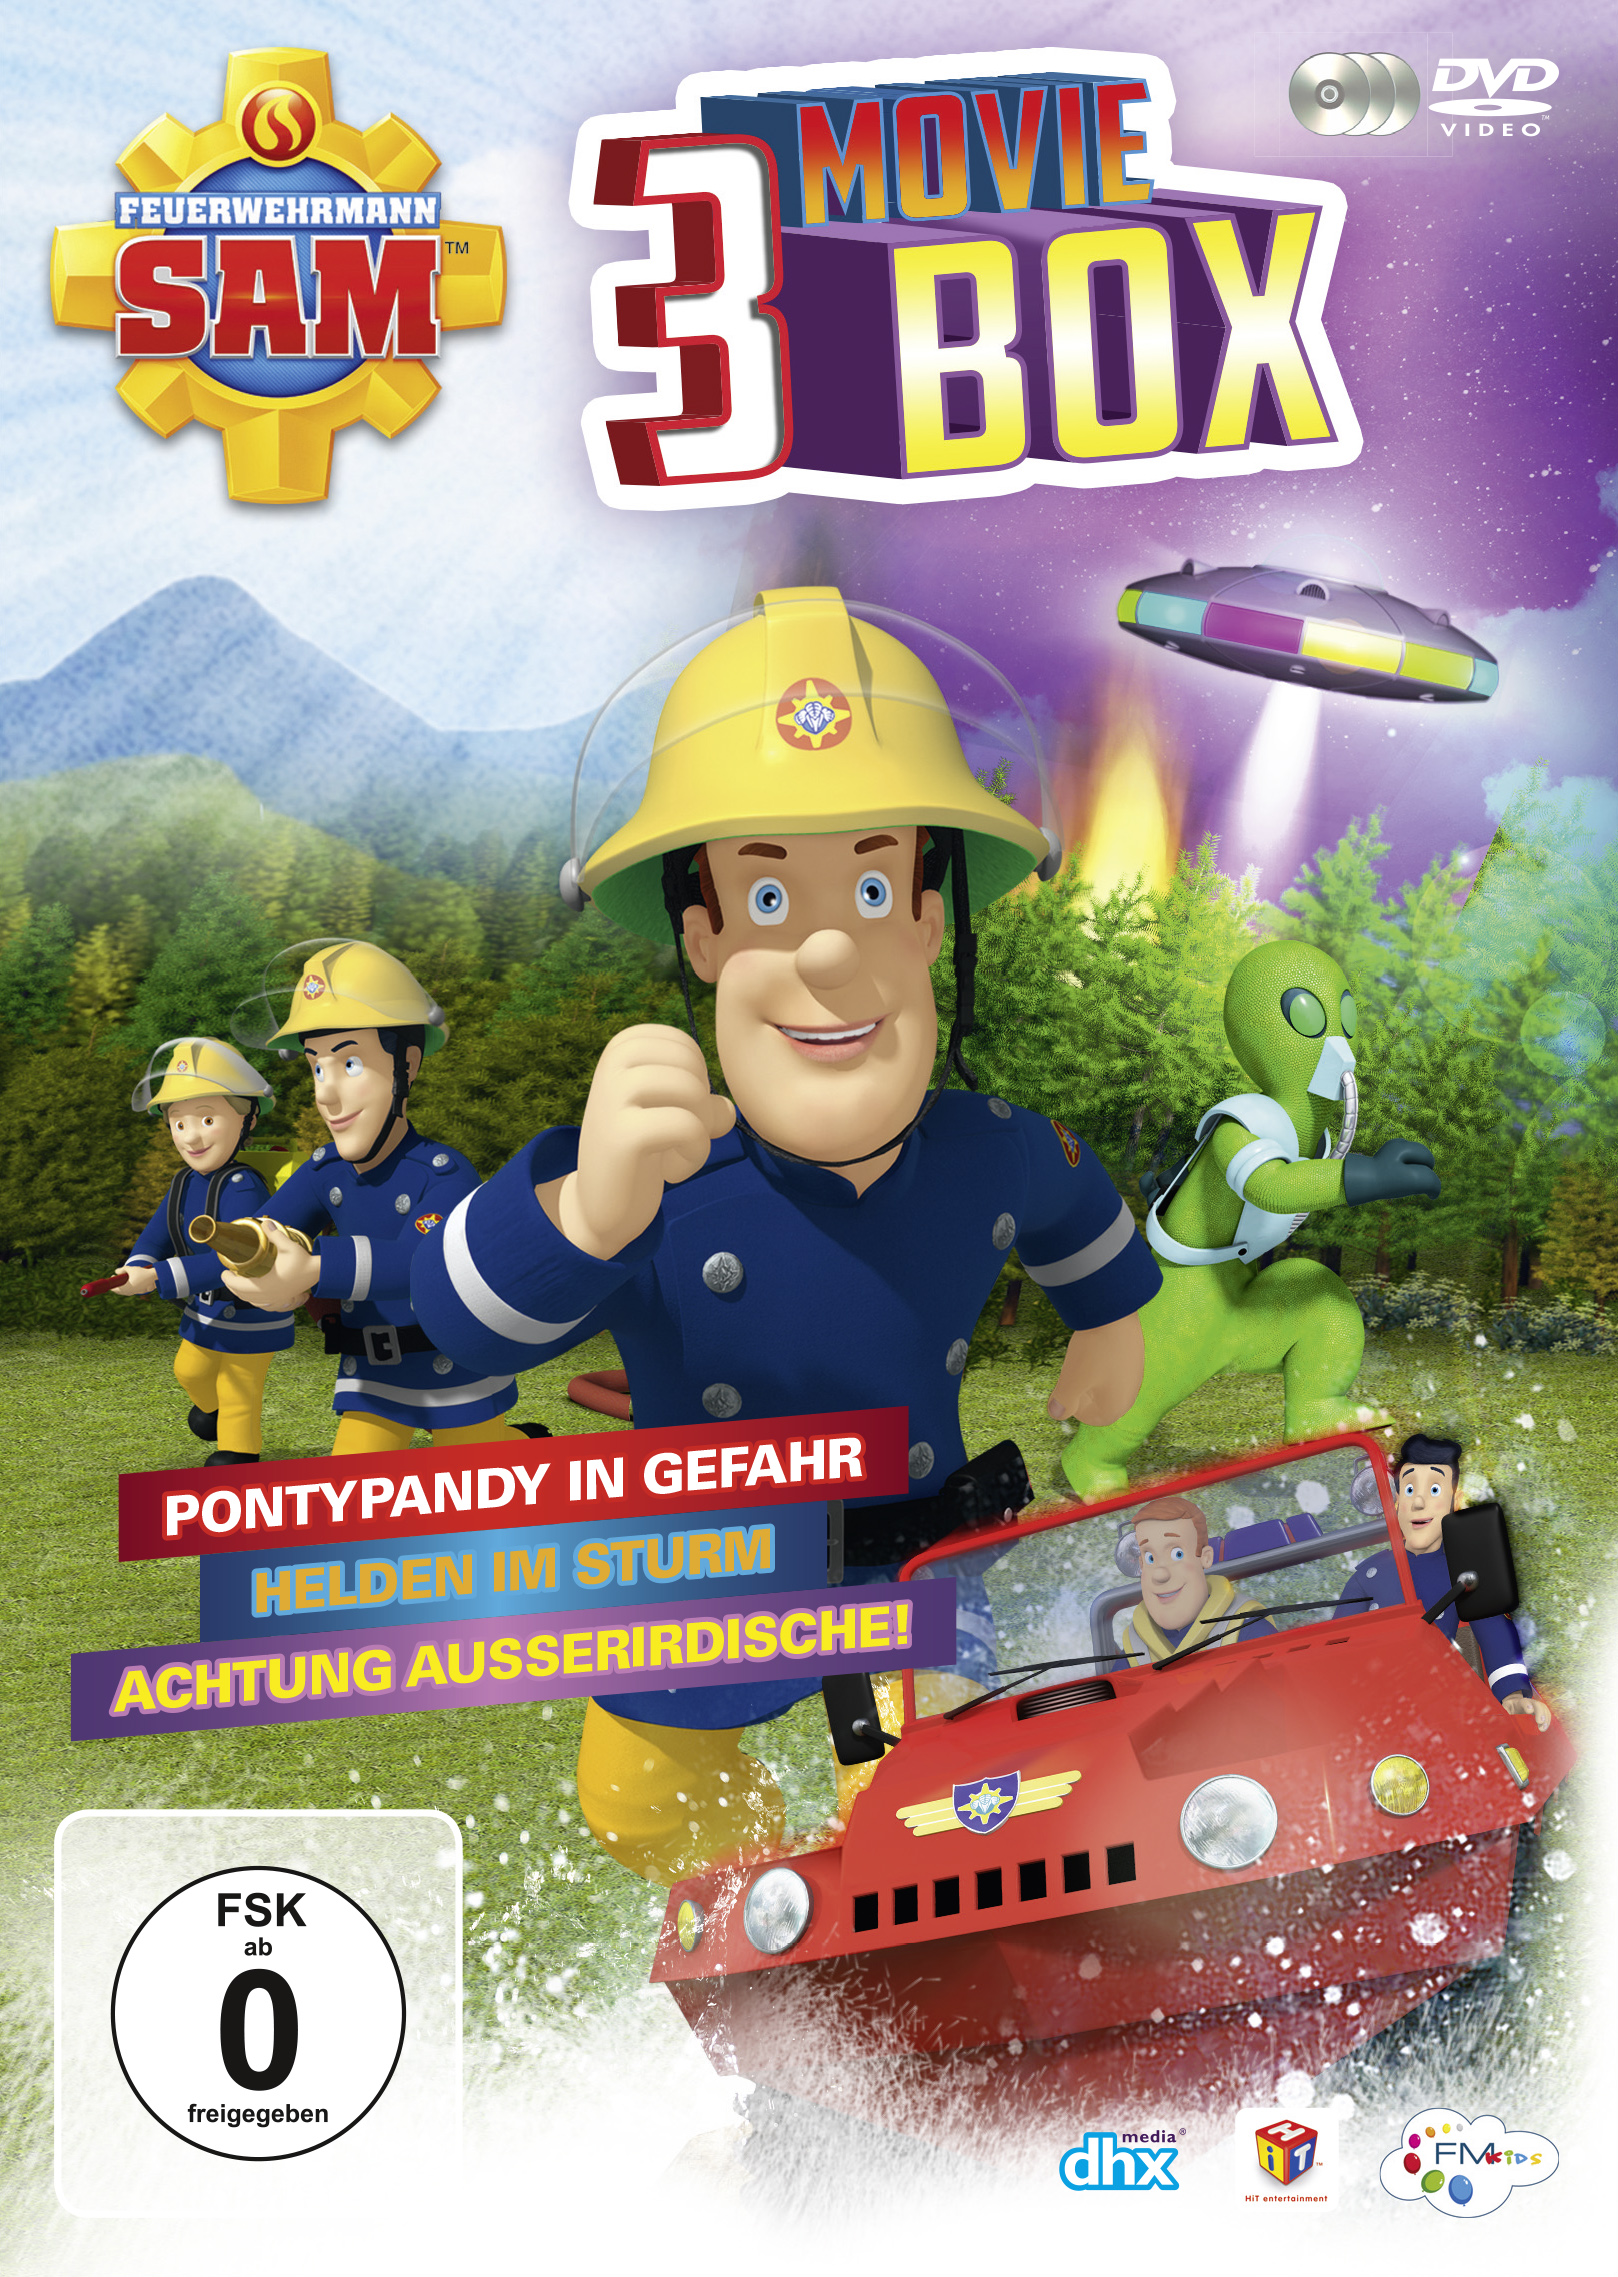 3 (Ltd.) Feuerwehrmann Moviebox DVD Sam